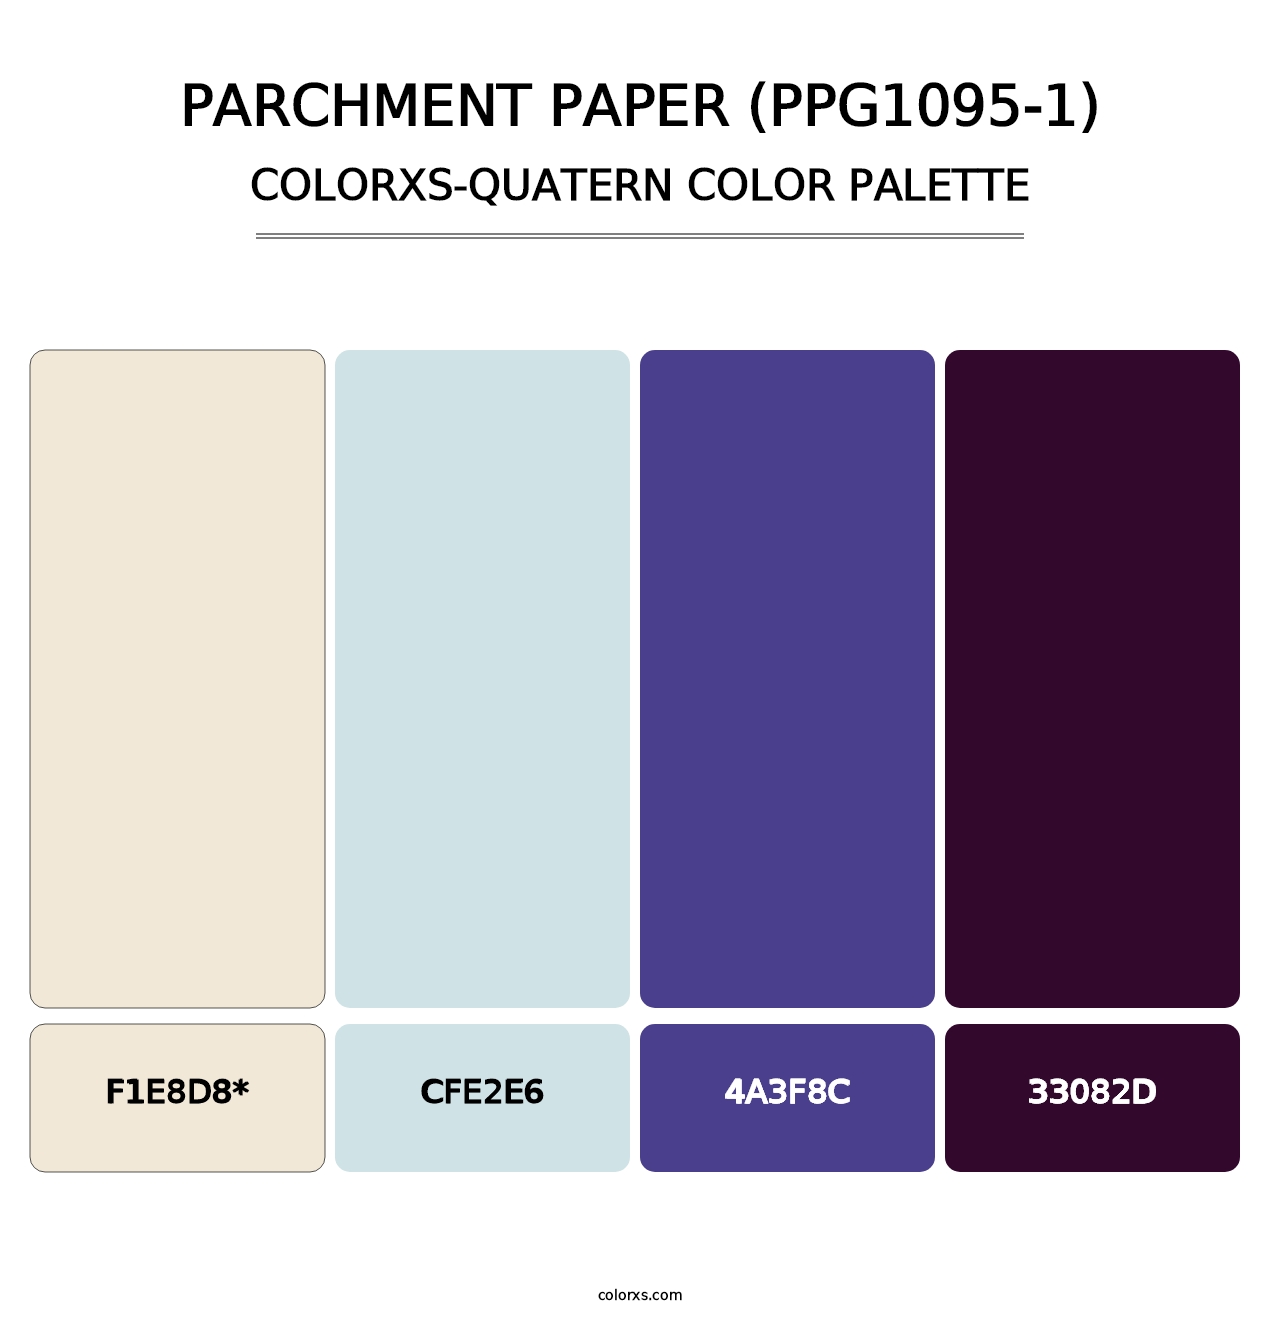 Parchment Paper (PPG1095-1) - Colorxs Quad Palette